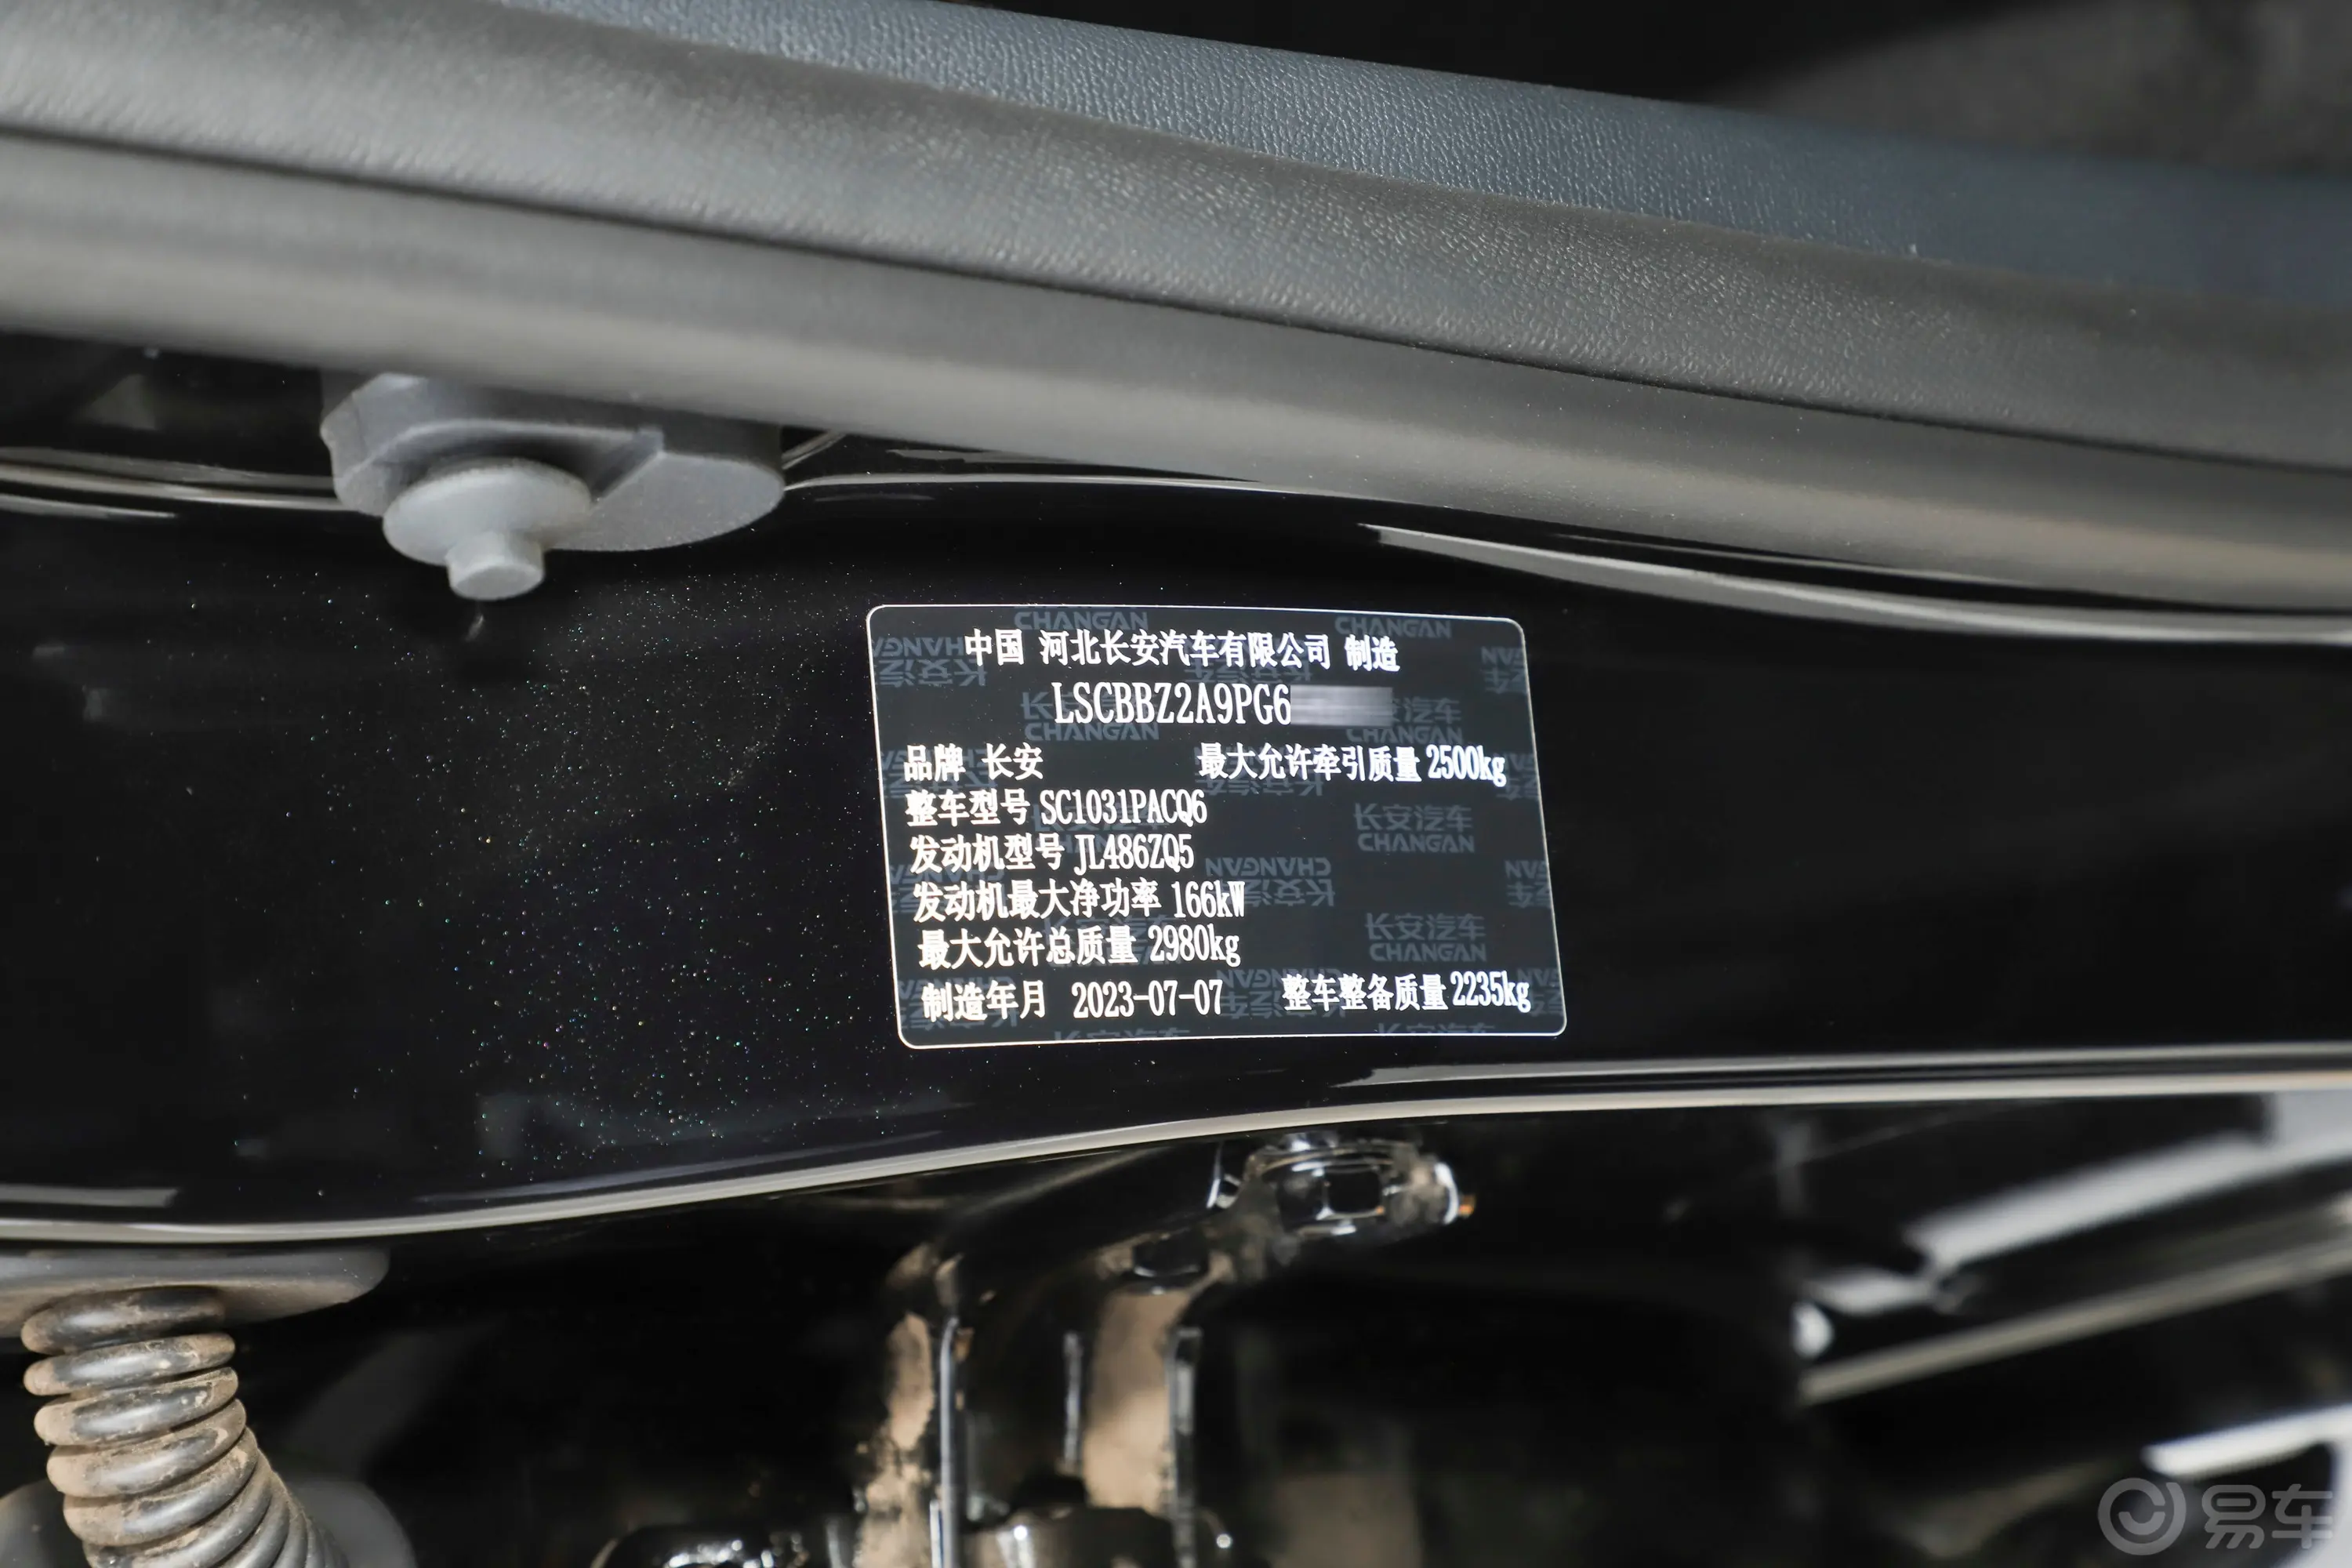 览拓者探索版 2.0T 自动四驱穿越型 汽油车辆信息铭牌